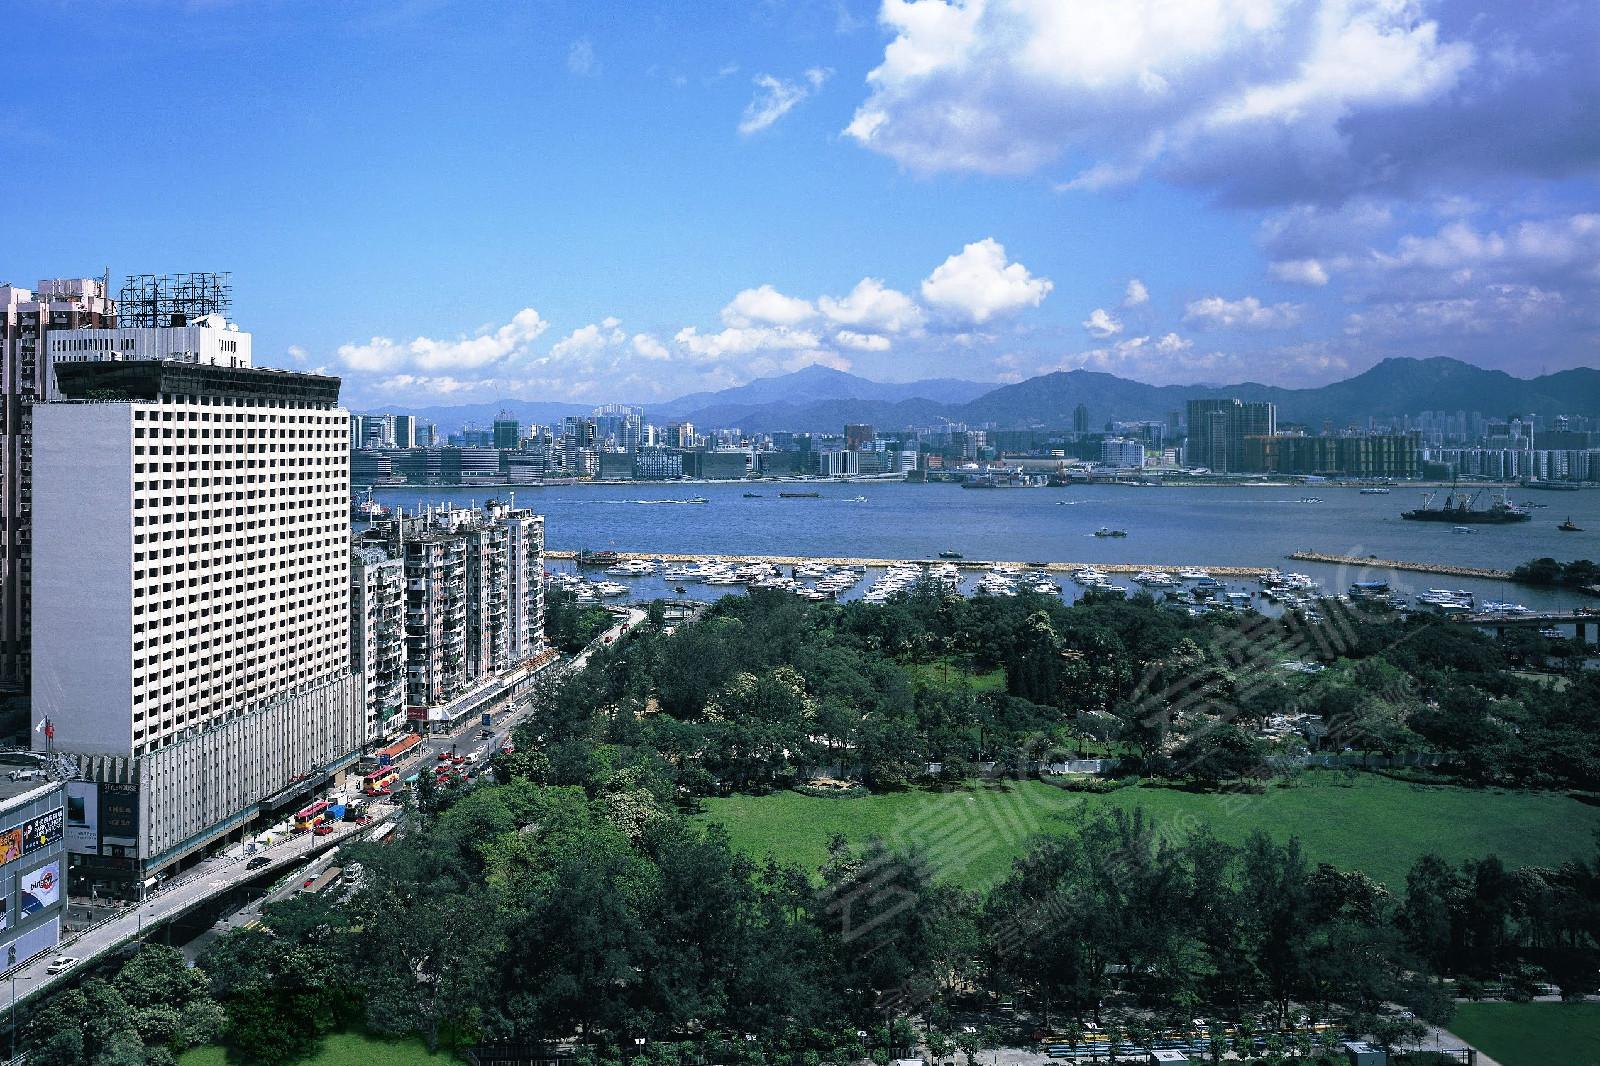 香港湾仔区150、250、350、450、550人会议场地推荐:香港柏宁铂尔曼酒店(The Park Lane Hong Kong, a Pullman Hotel)